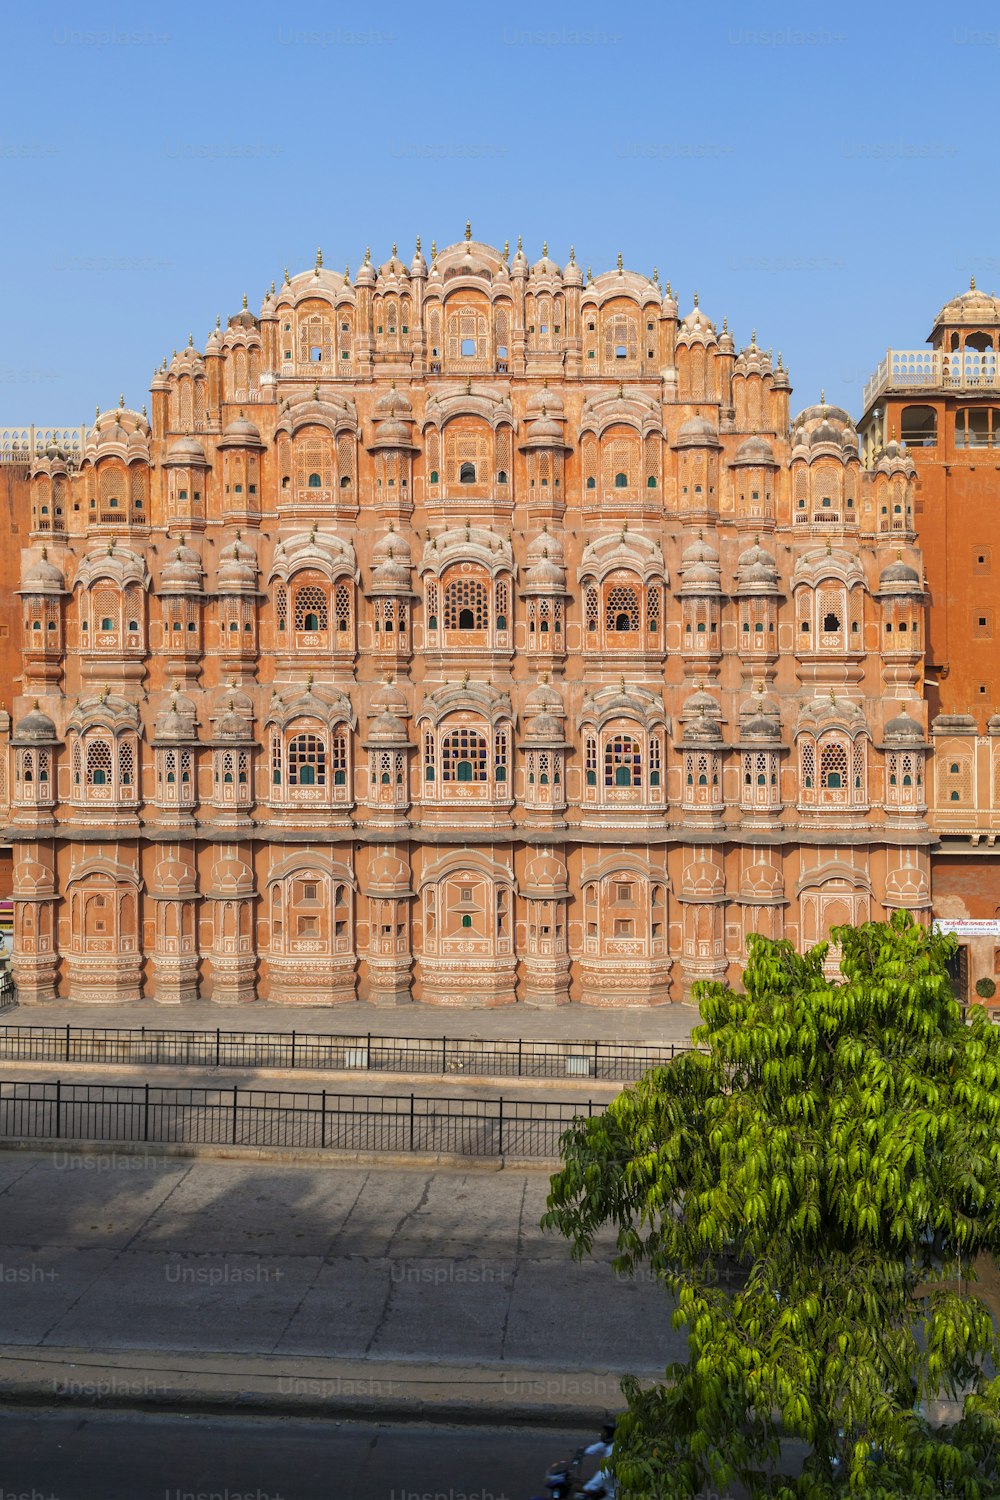 Hawa Mahal, the Palace of Winds in Jaipur, Rajasthan, India.